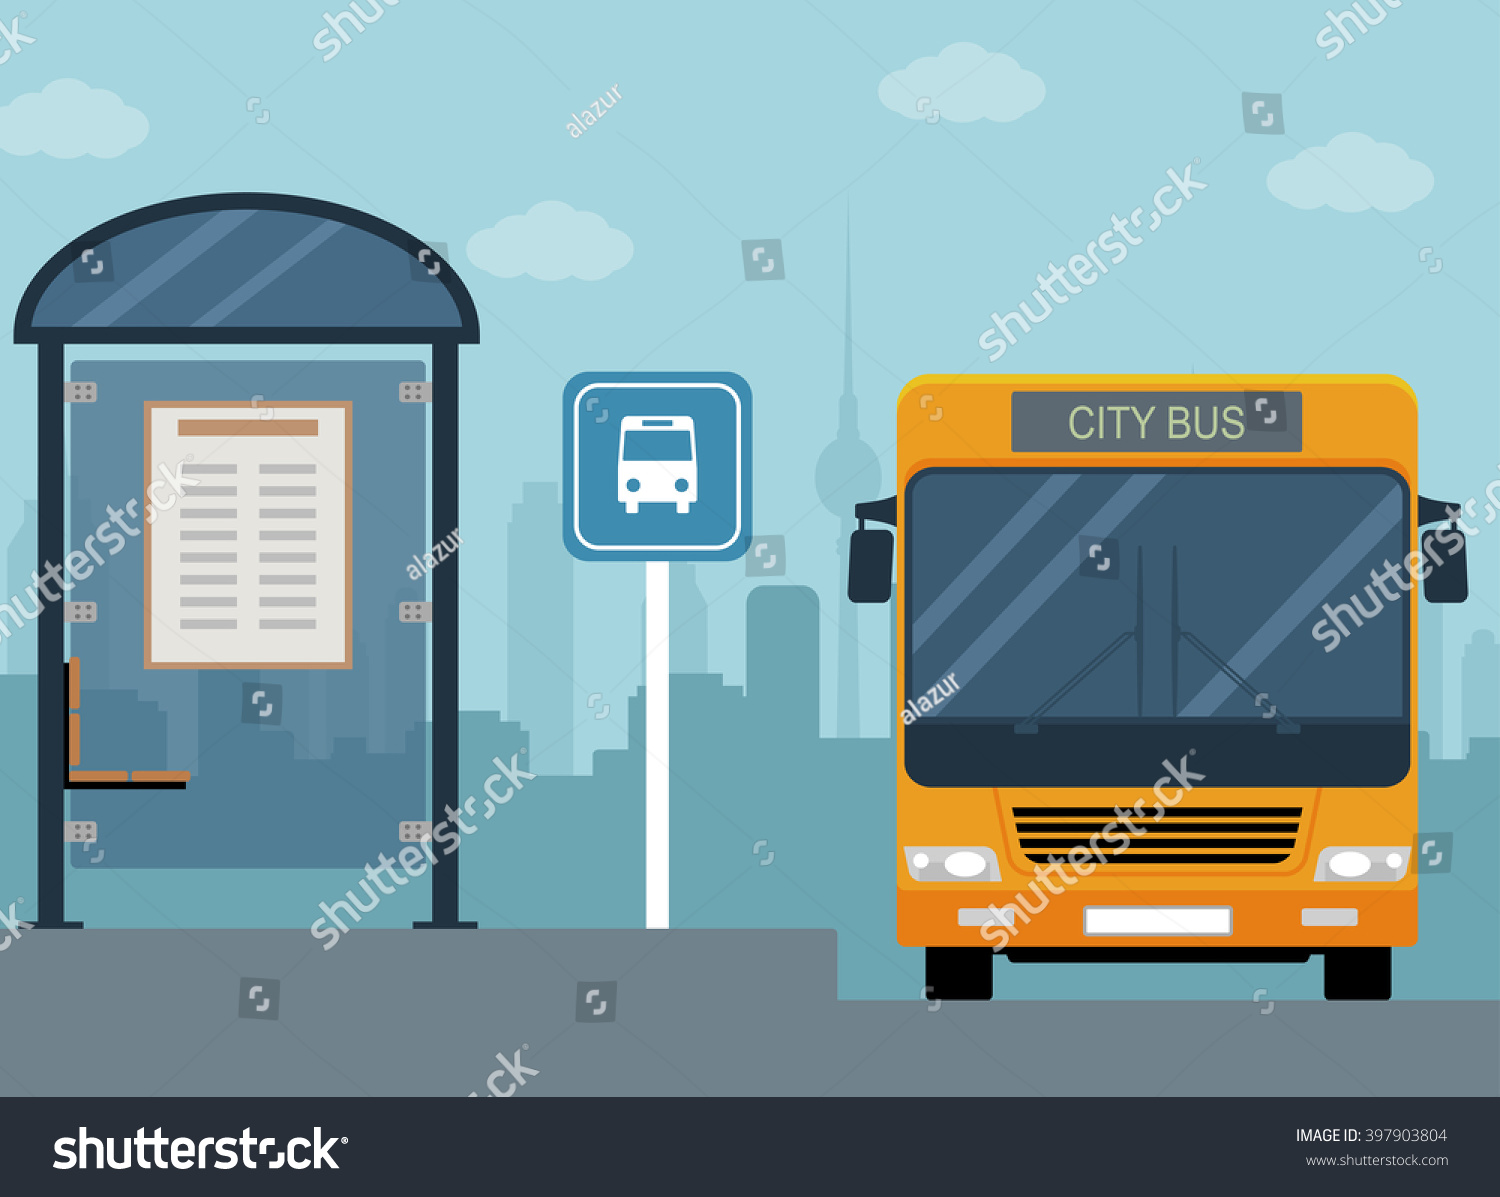 バス停のバスの写真 フラットスタイルのイラスト のベクター画像素材 ロイヤリティフリー